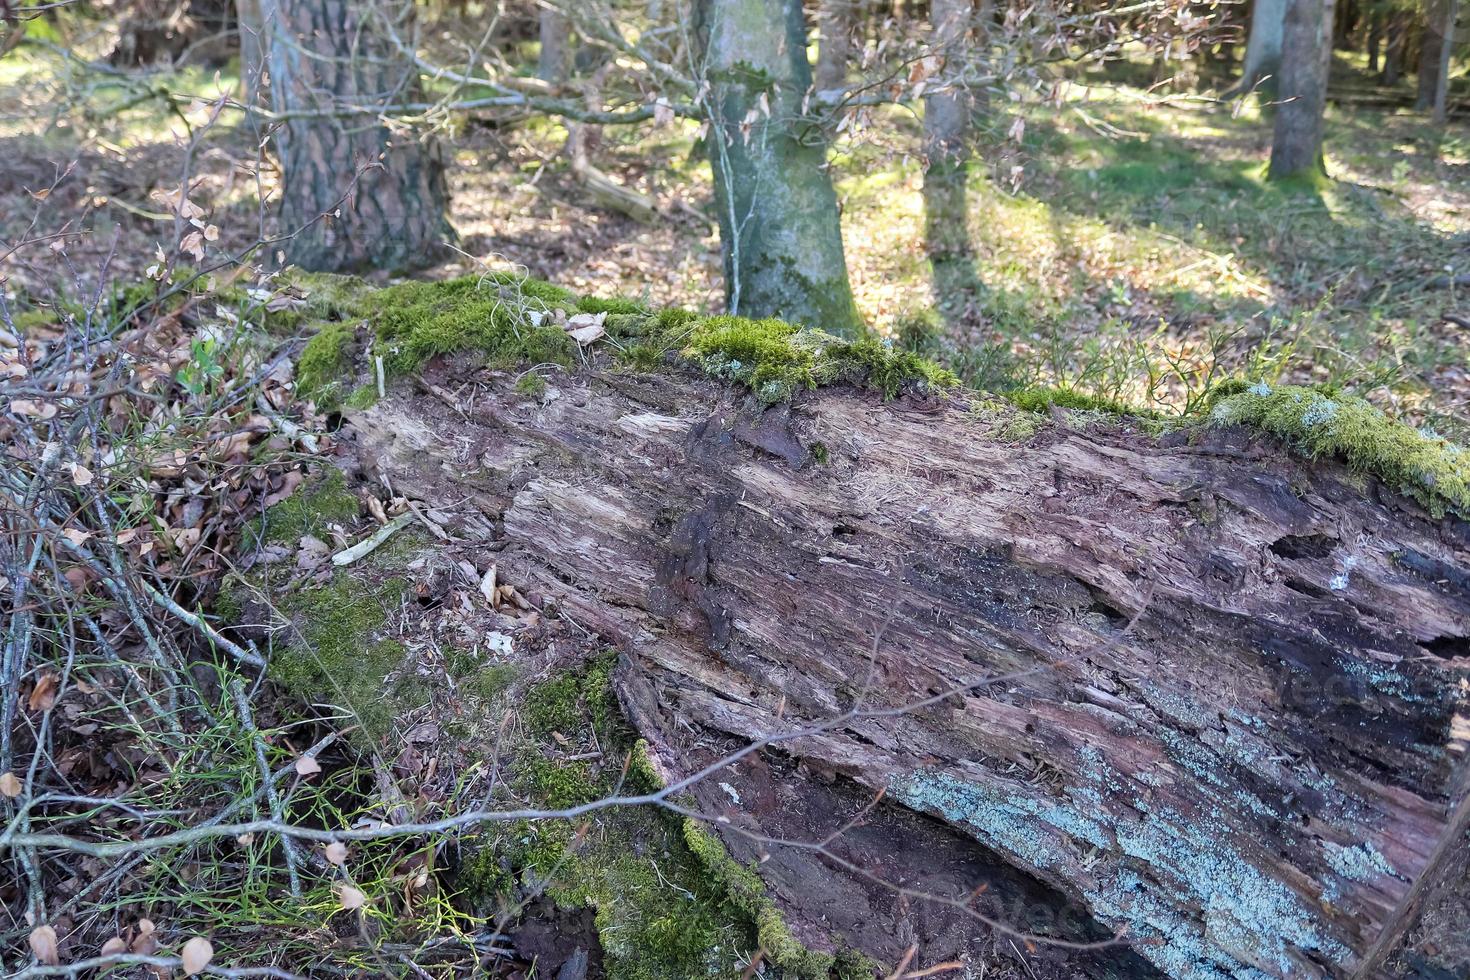 vista detalhada de perto em uma textura de terra de floresta com musgo e galhos foto